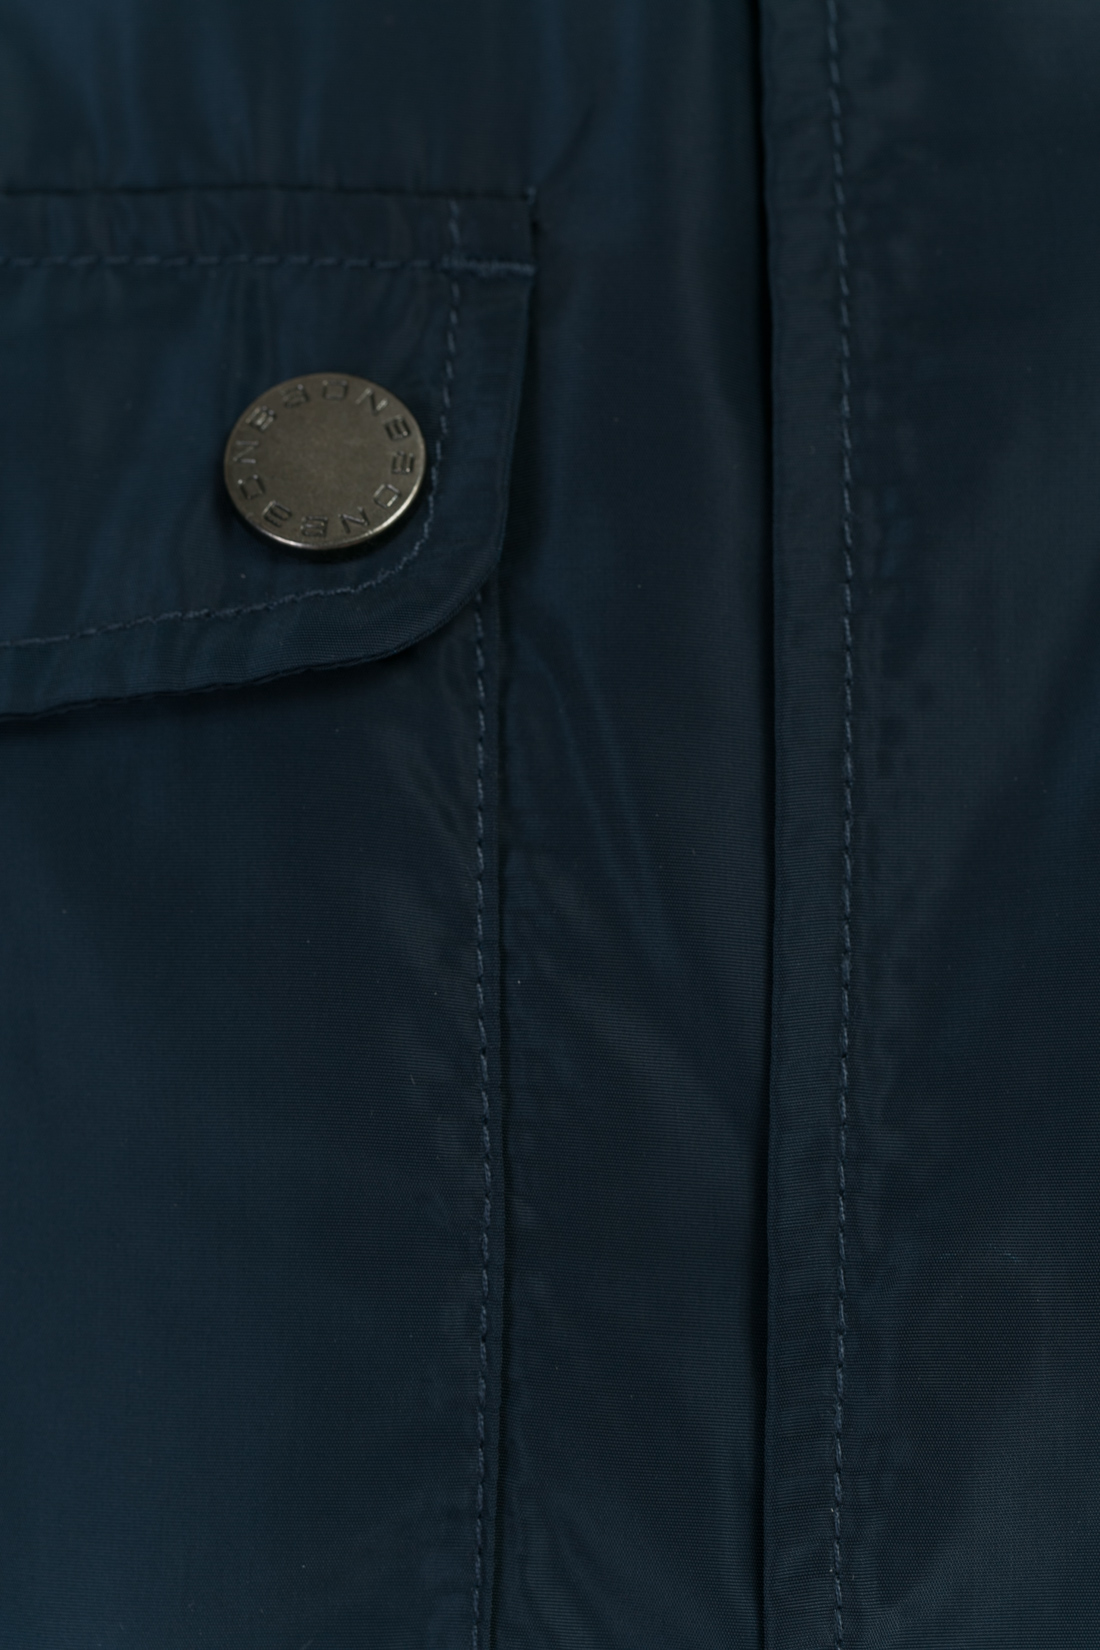 Ветровка с металлической фурнитурой (арт. baon B607011), размер M, цвет синий Ветровка с металлической фурнитурой (арт. baon B607011) - фото 4